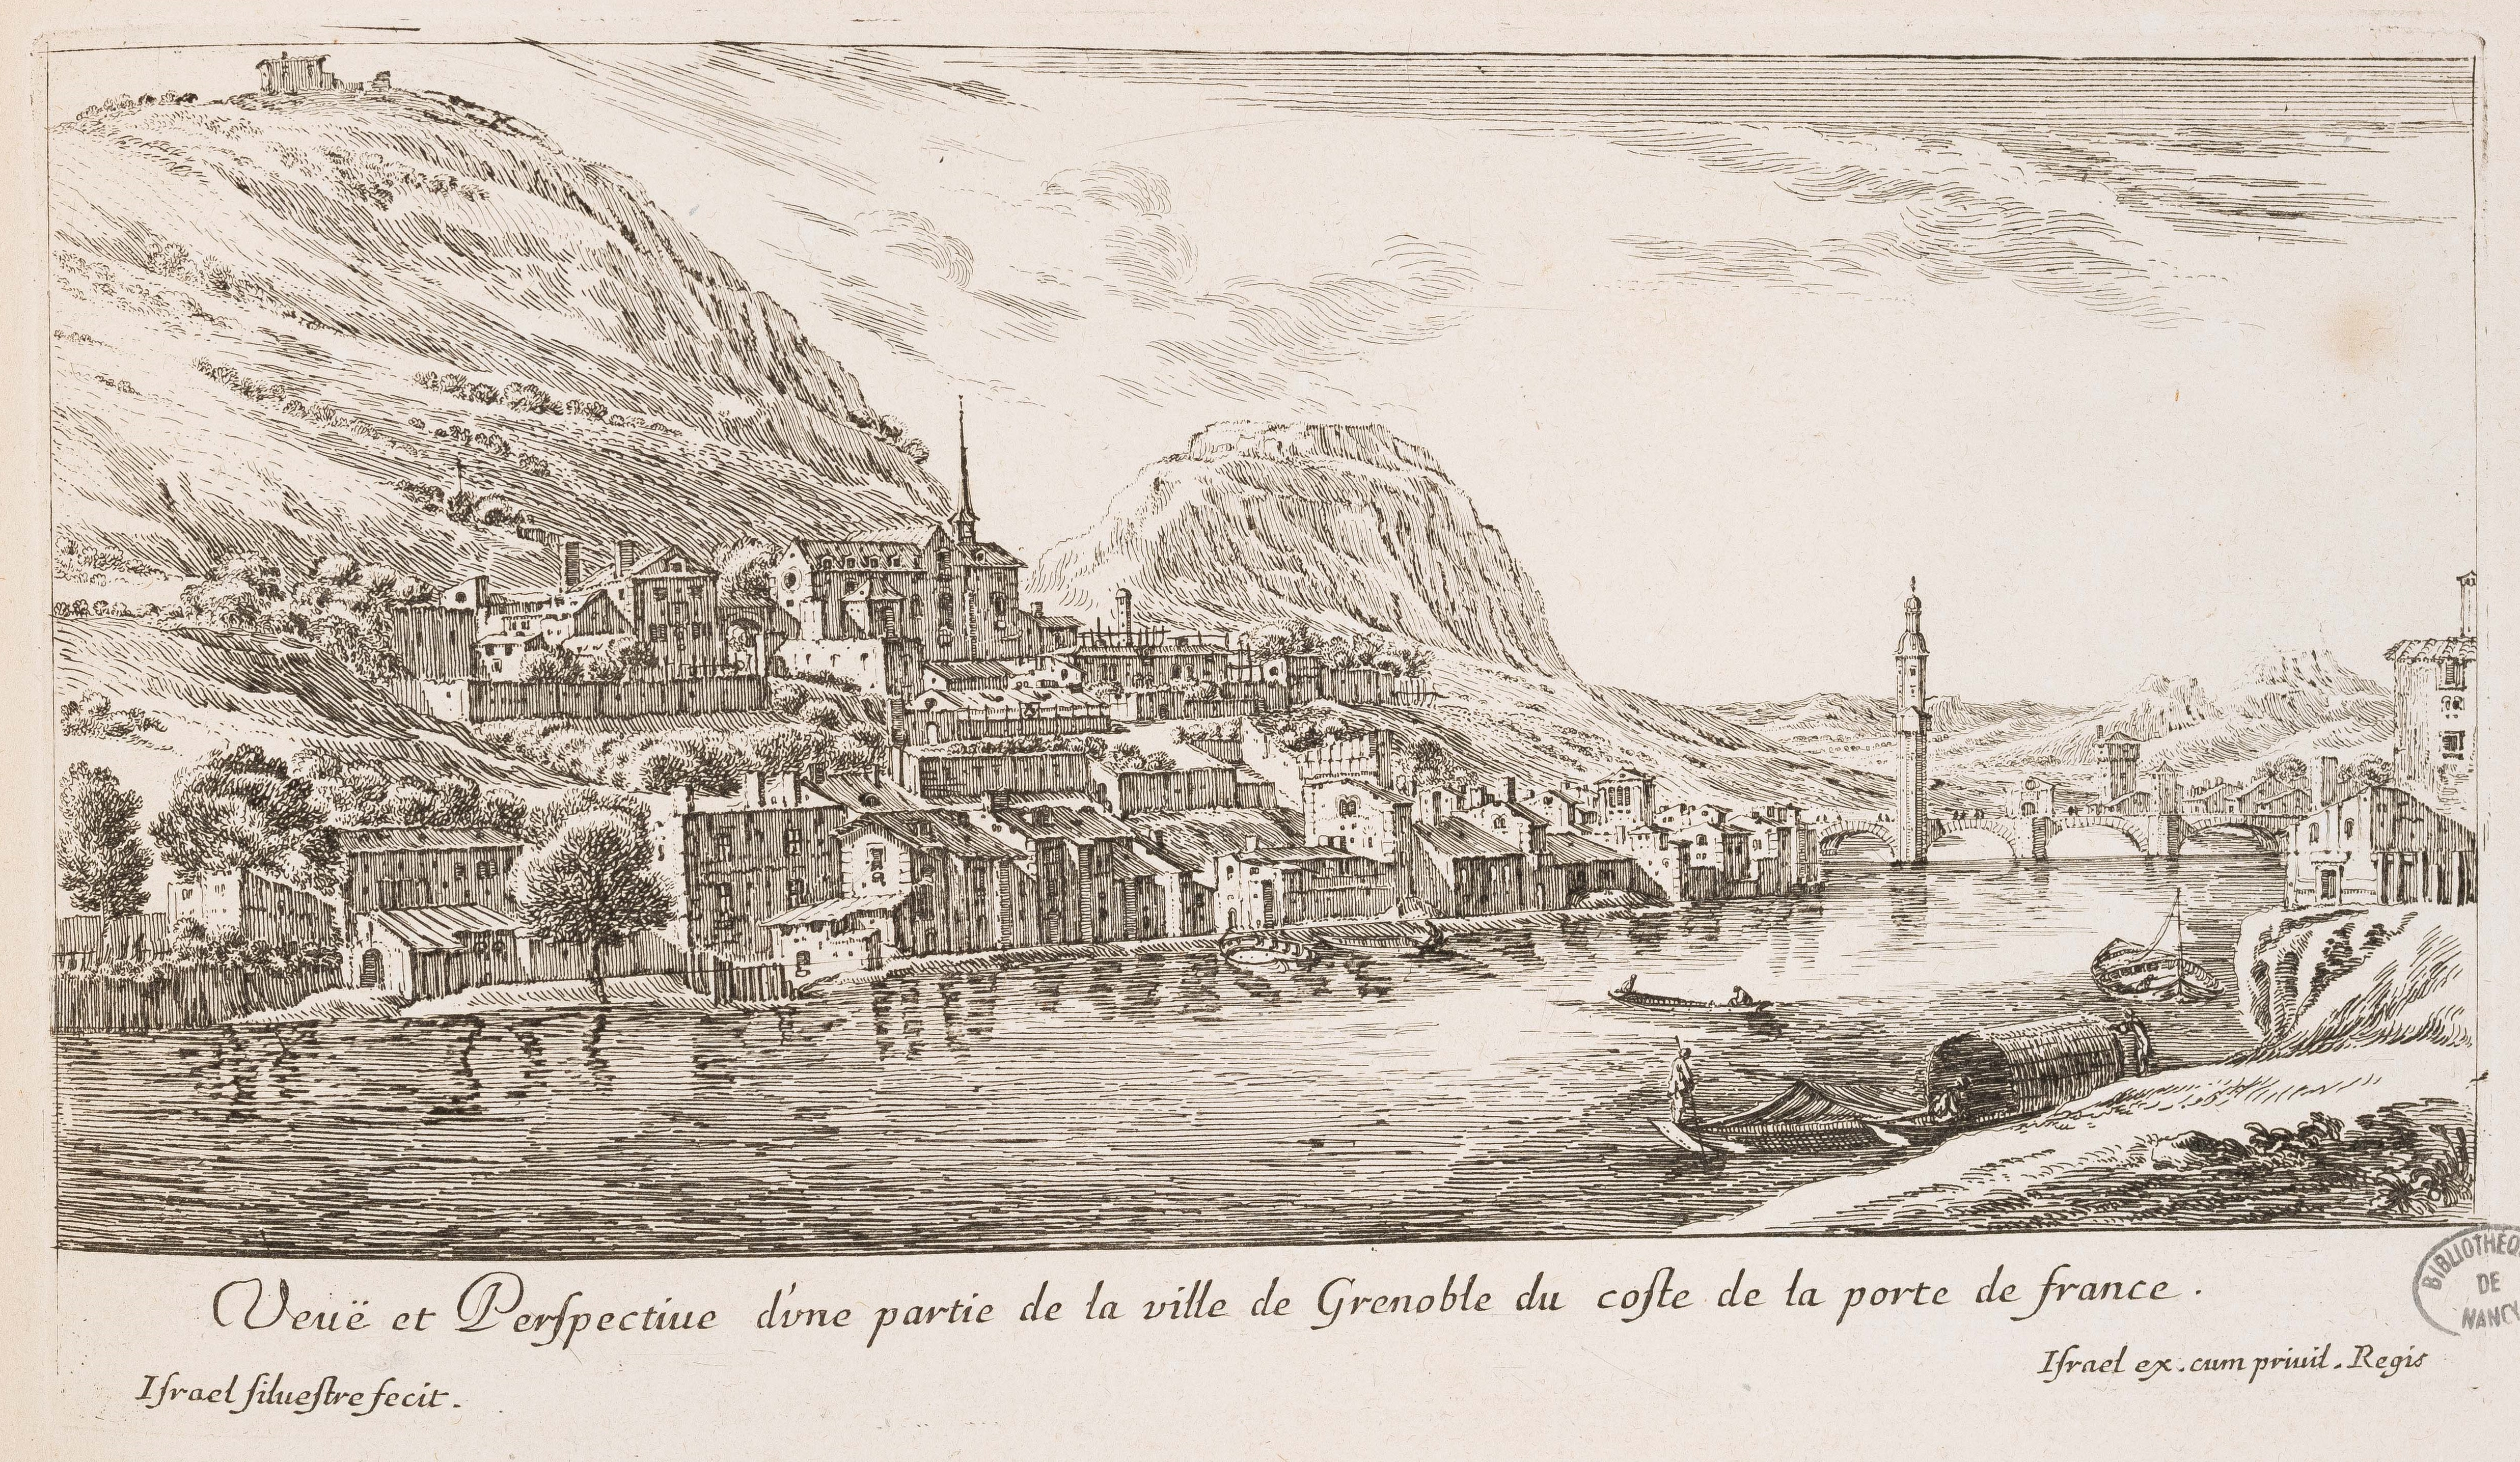 Israël Silvestre : Veuë et Perspective d'une partie de la ville de Grenoble du coste de la porte de france.